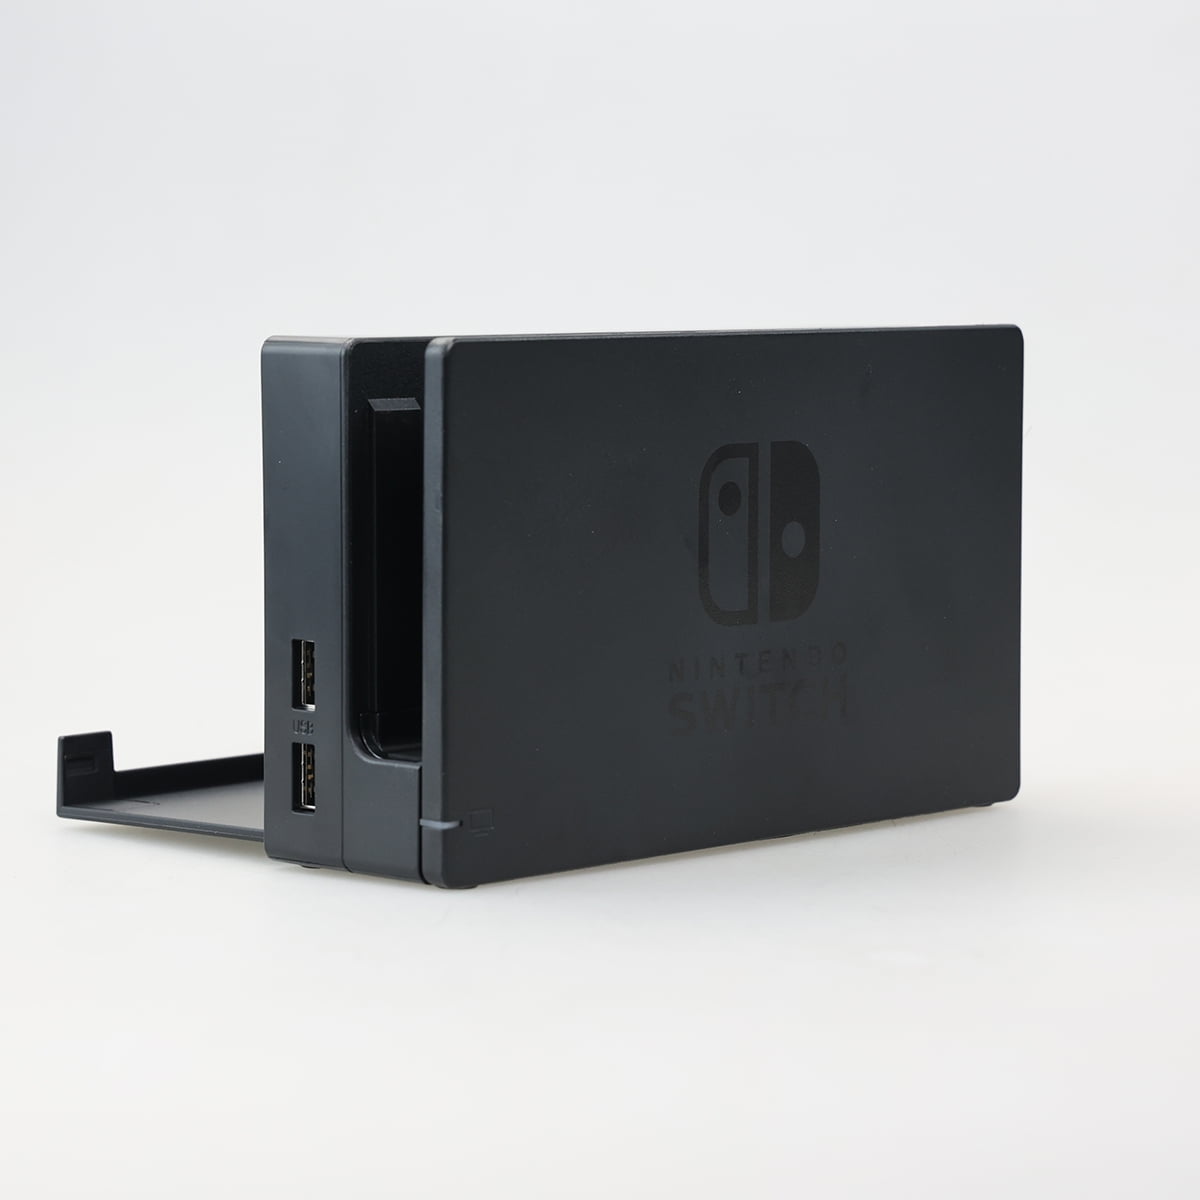 Nintendo prévoit de vendre le dock de la Nintendo Switch OLED aussi  séparément